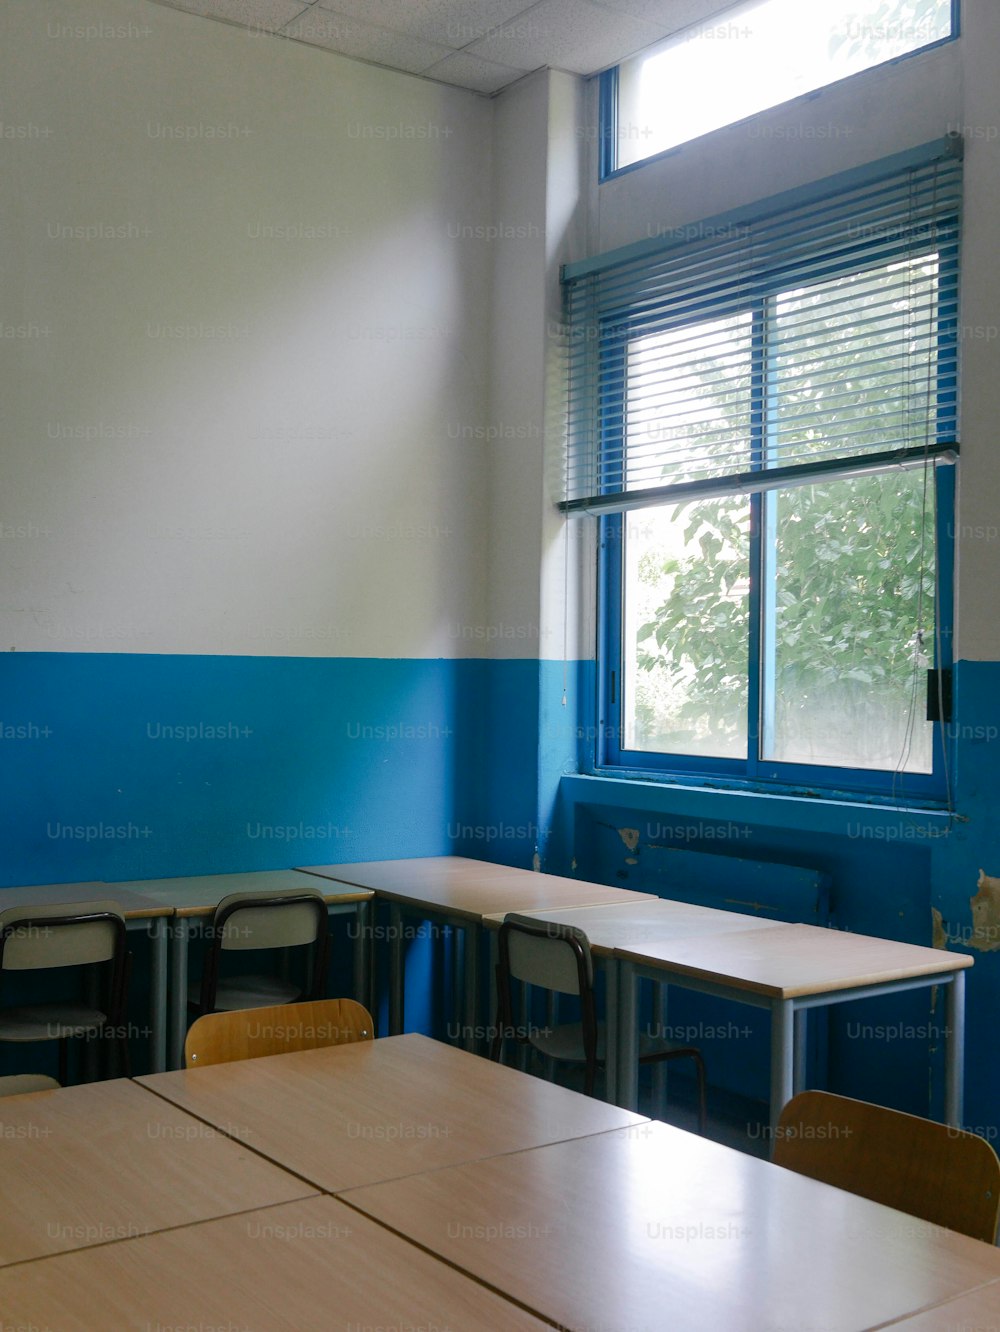 Un aula vacía con paredes azules y blancas